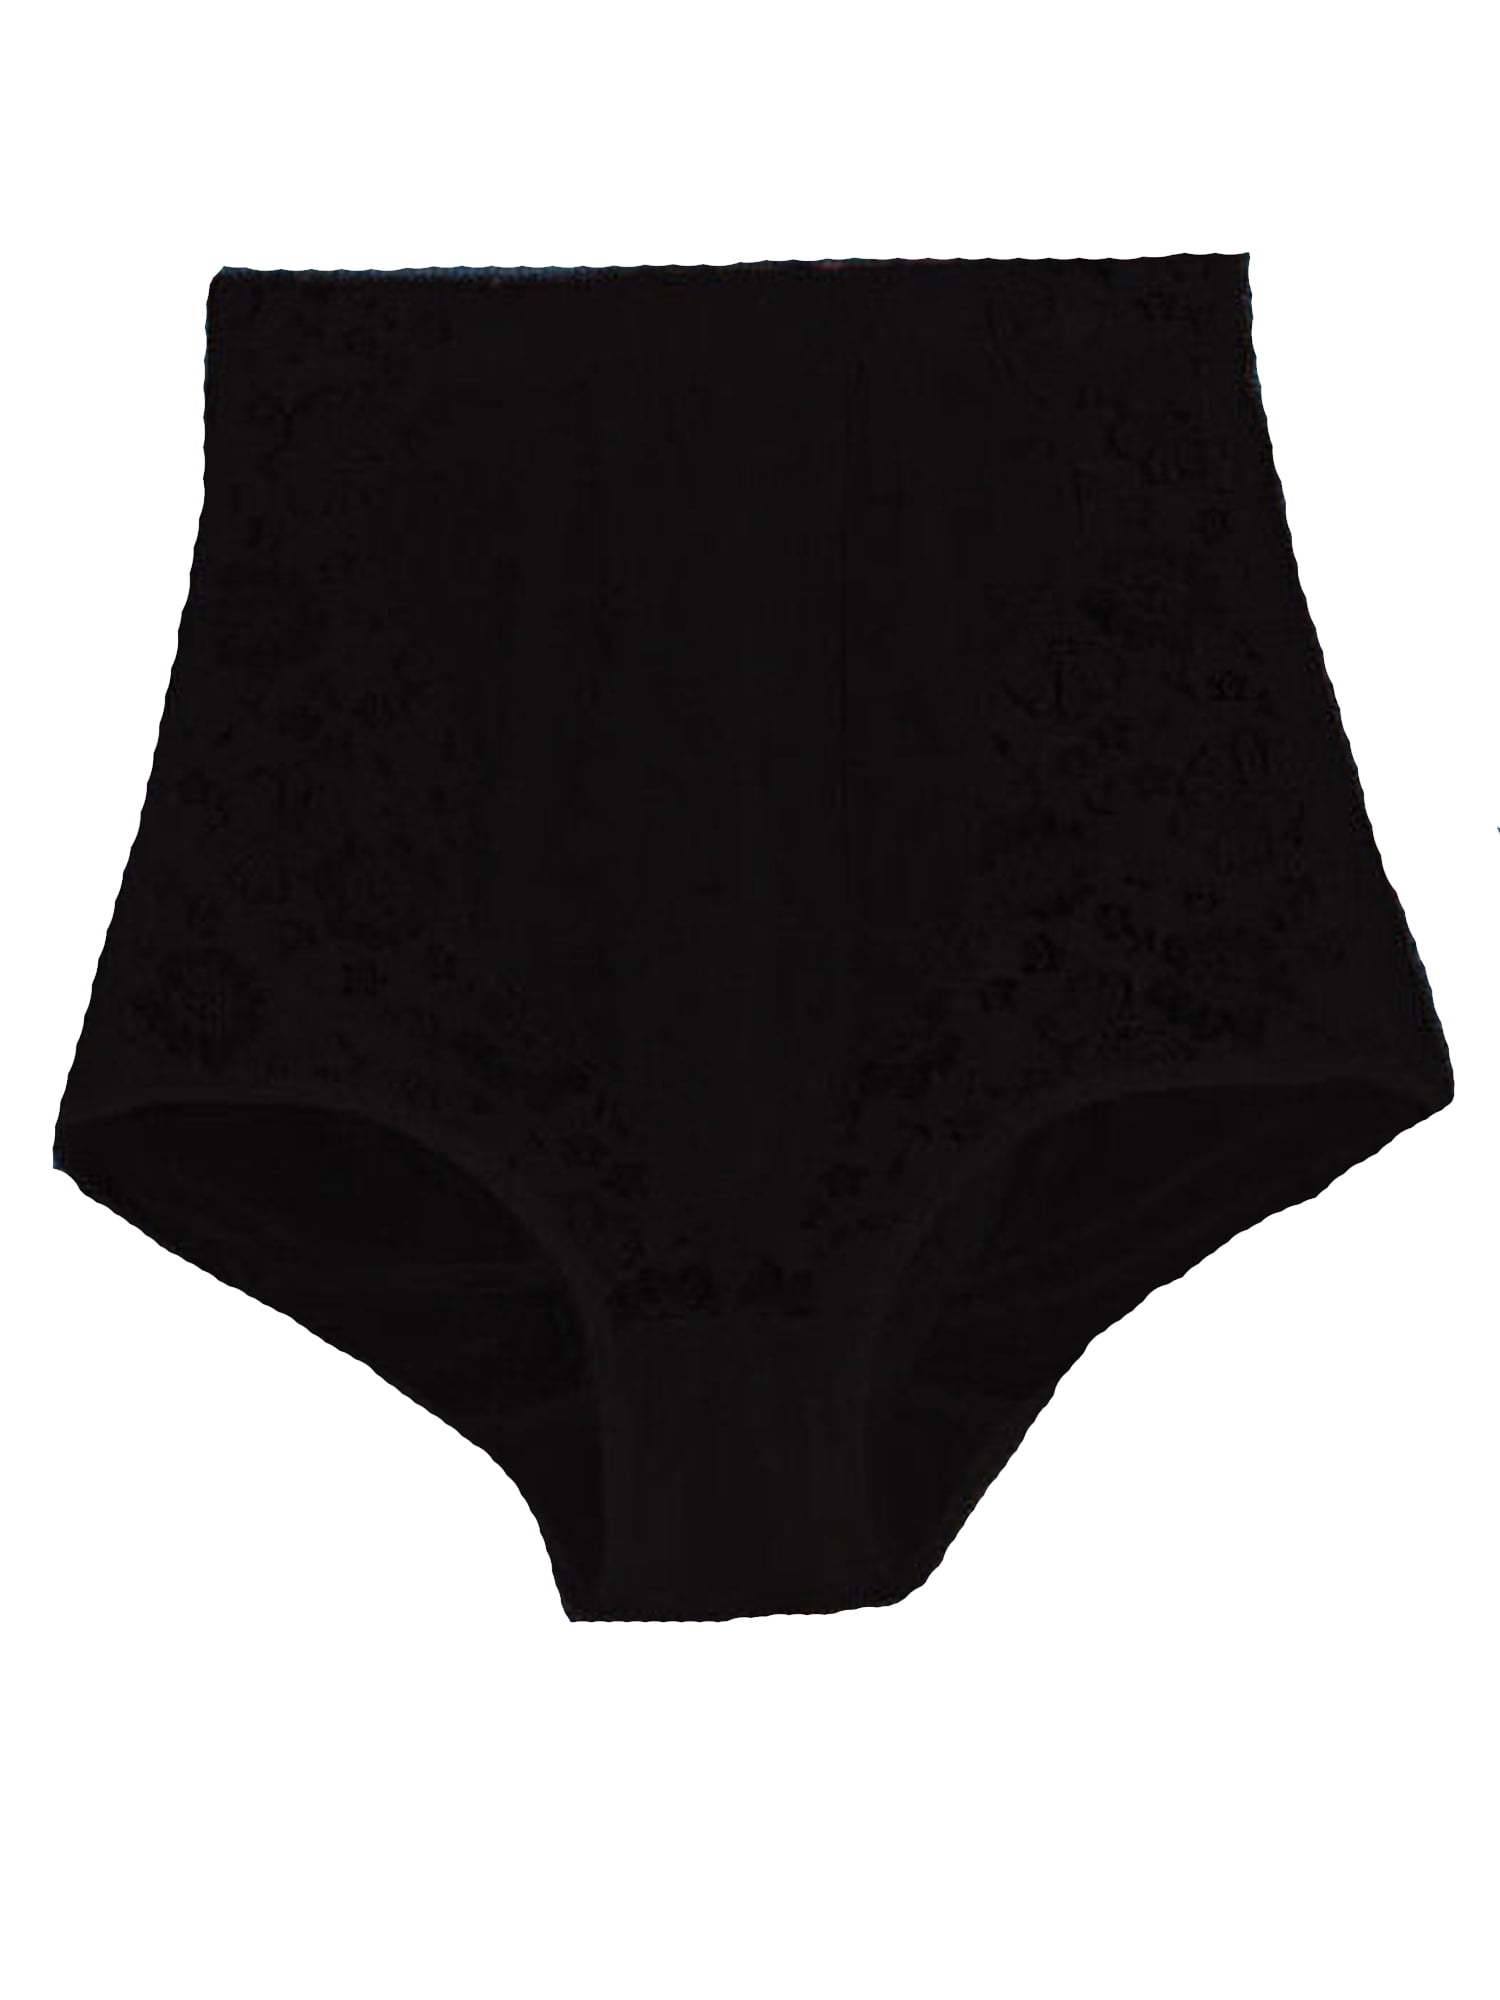 Xiaodriceee - Plus Size Body Waist Shaper Women High Waist Underwear ...